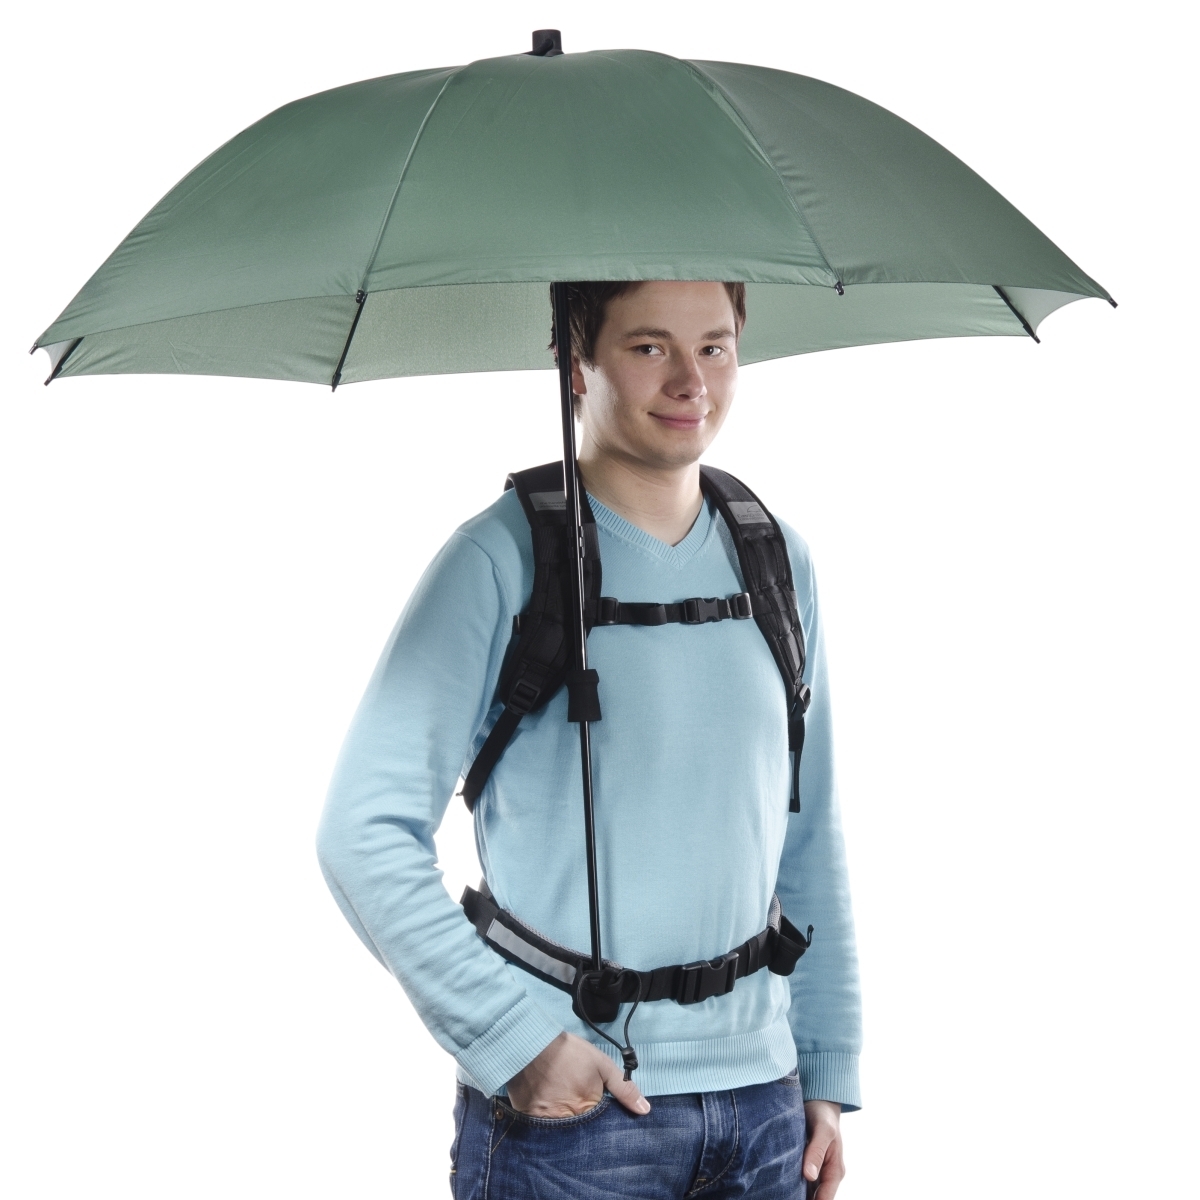 Swing handsfree Regenschirm oliv mit Tragegestell - walimex / walimex